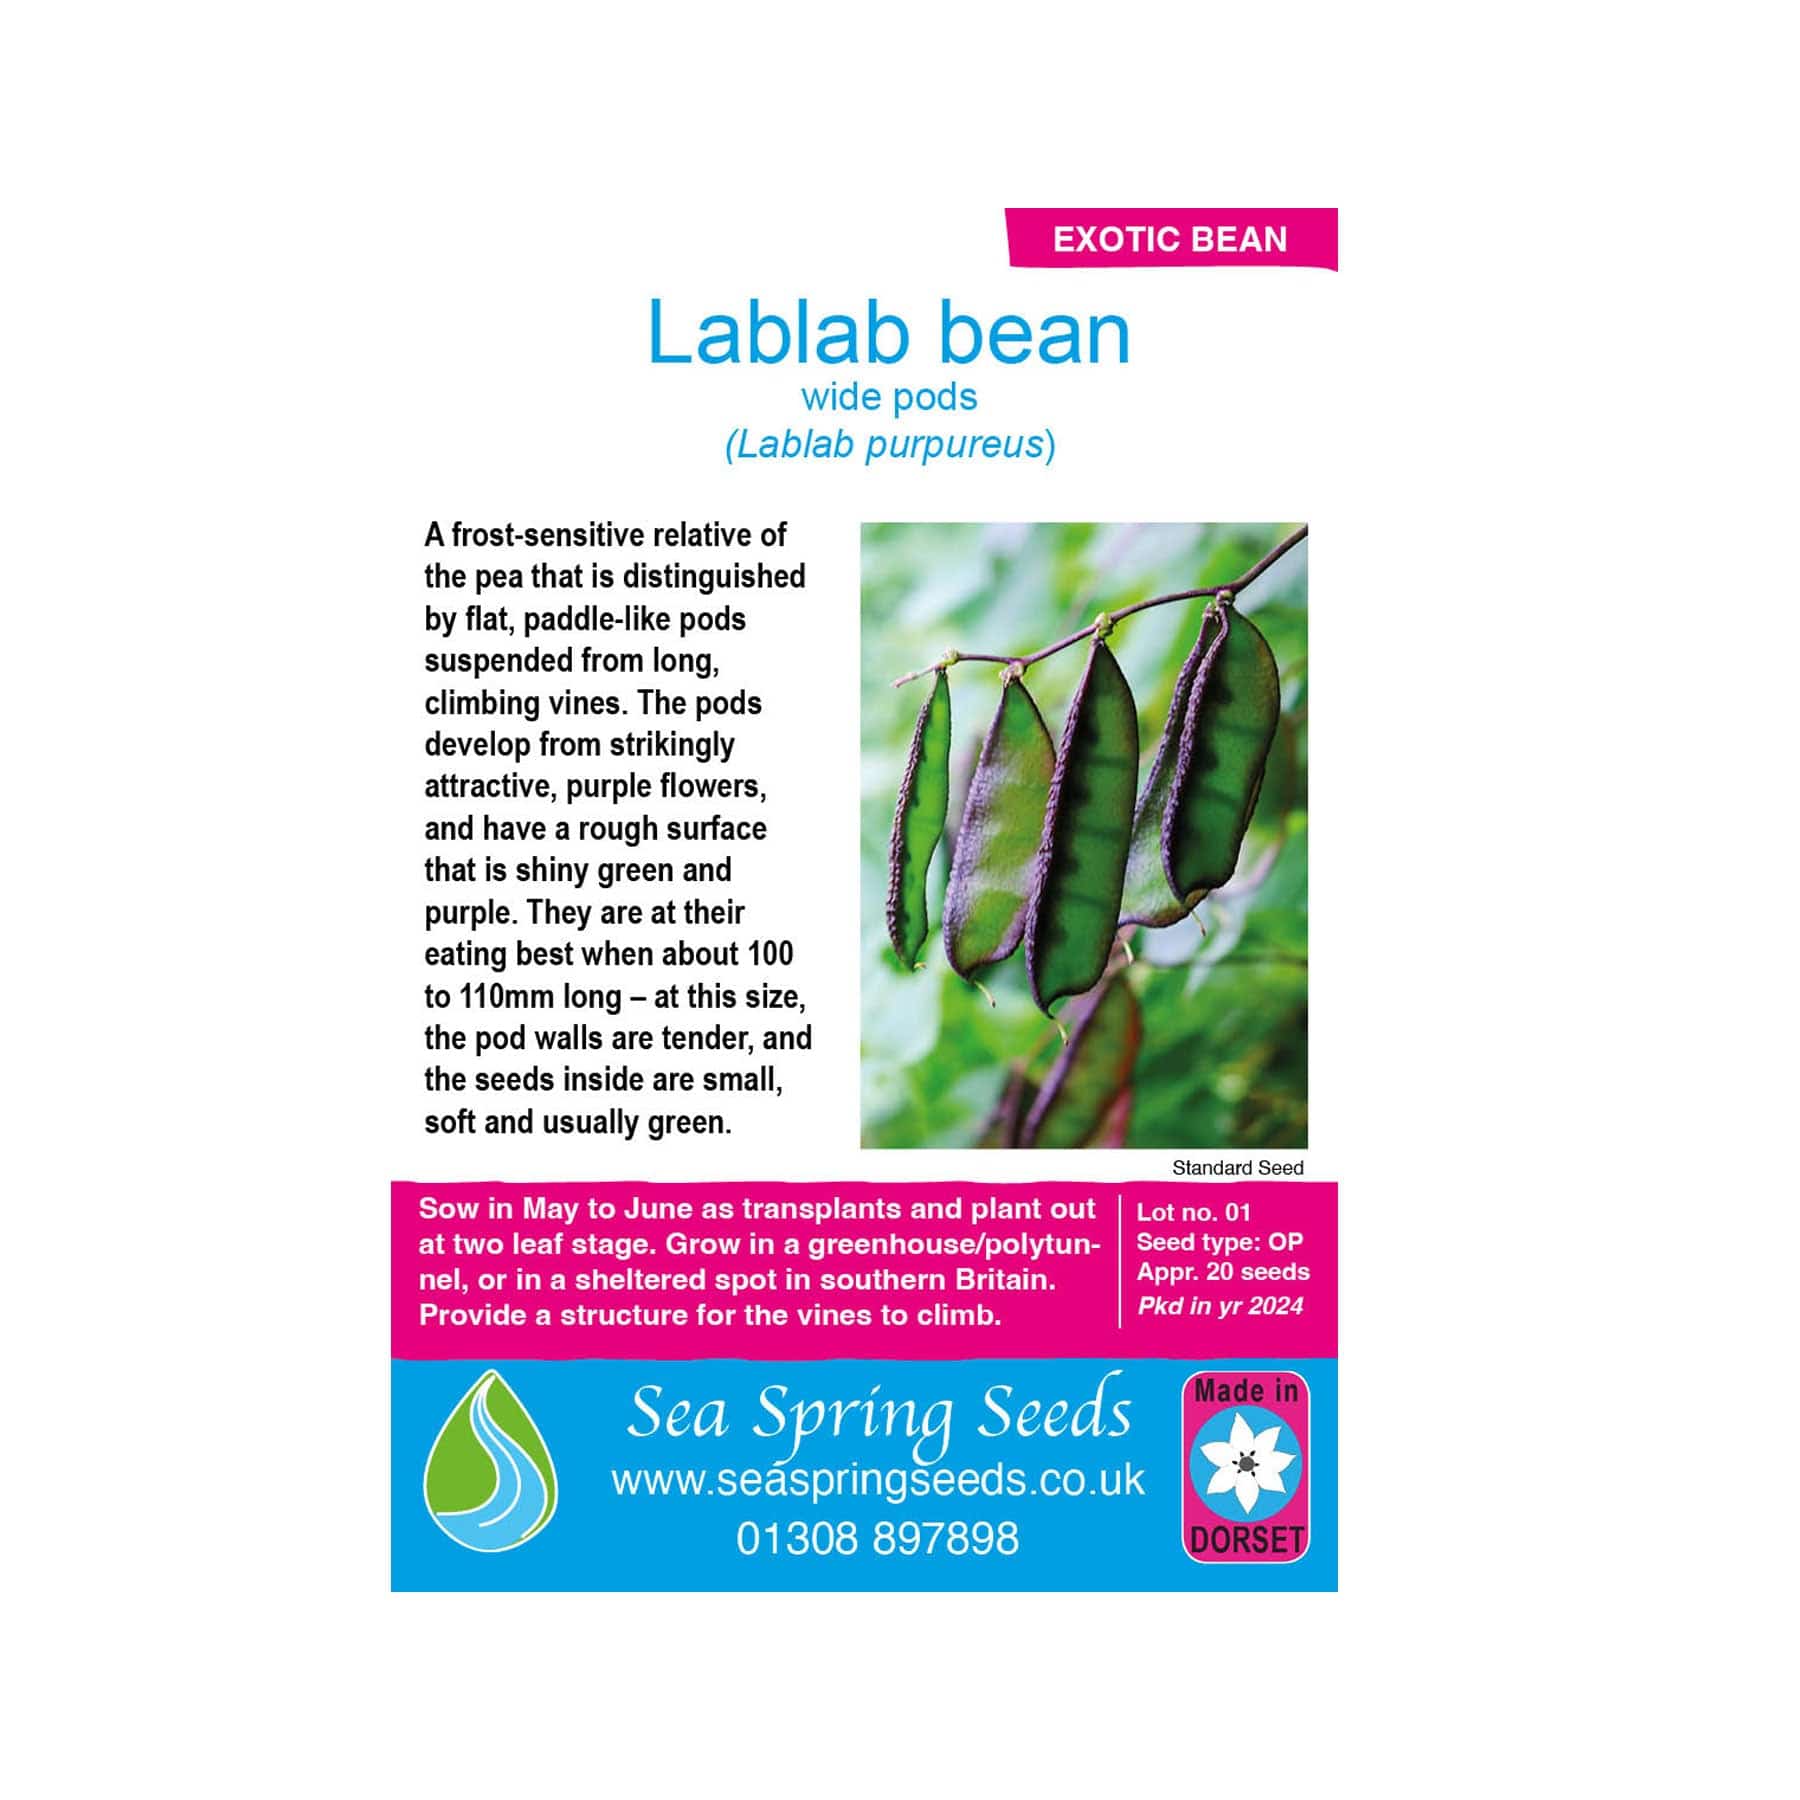 Lablab seeds